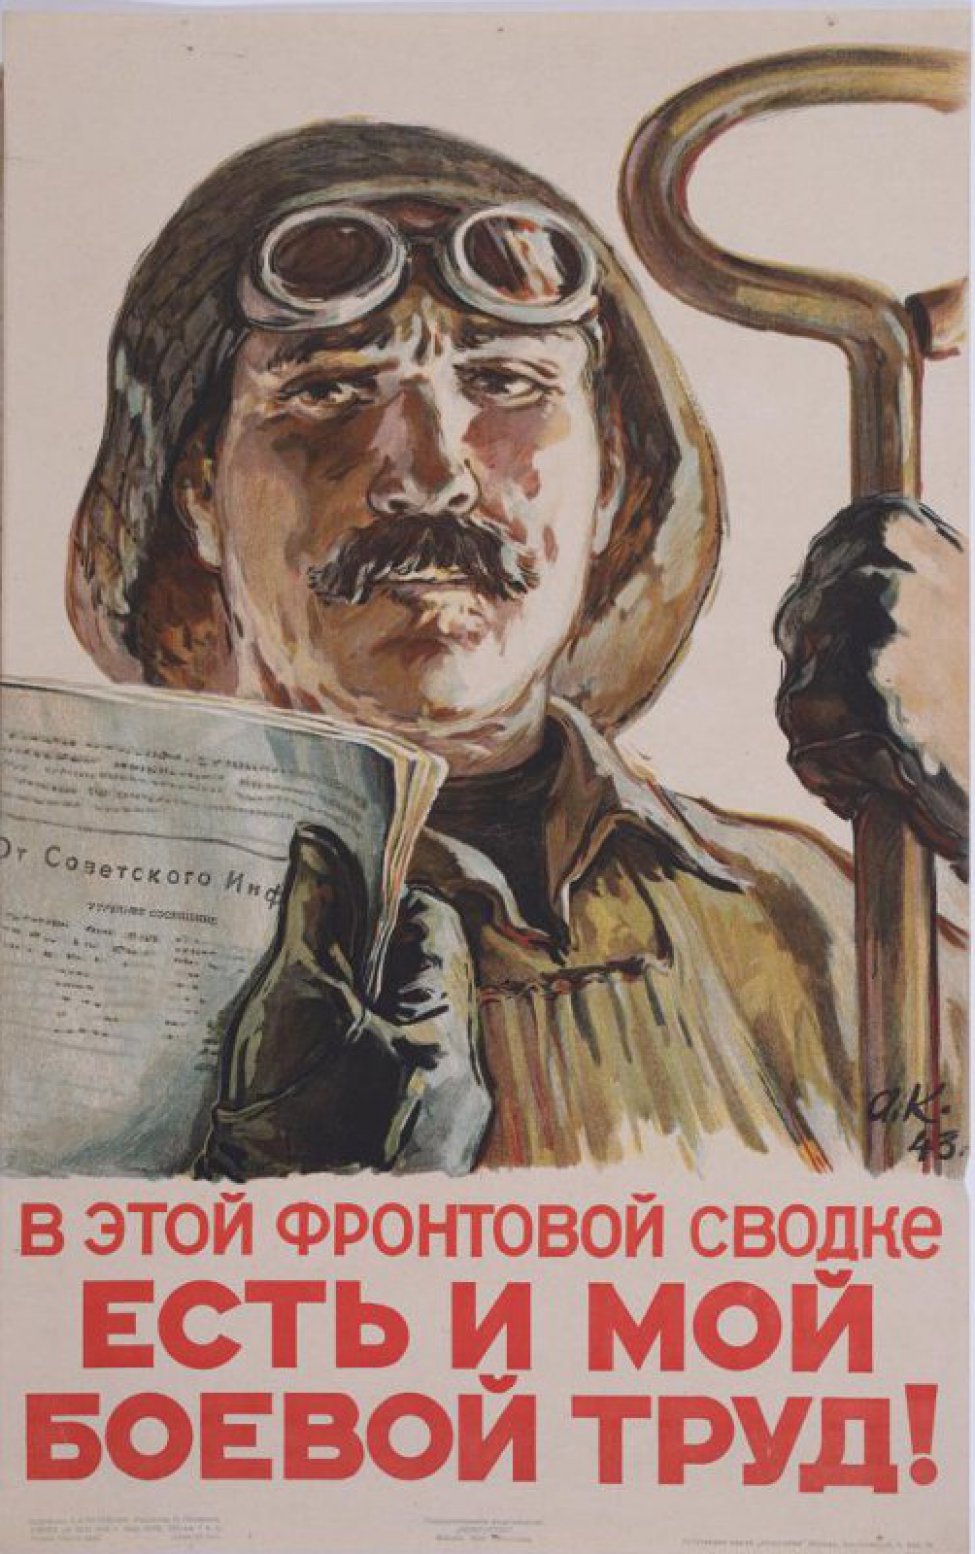 Изображен рабочий сталевар. В правой руке держит газету с сообщением от Советского Информбюро", в левой большой ключ.